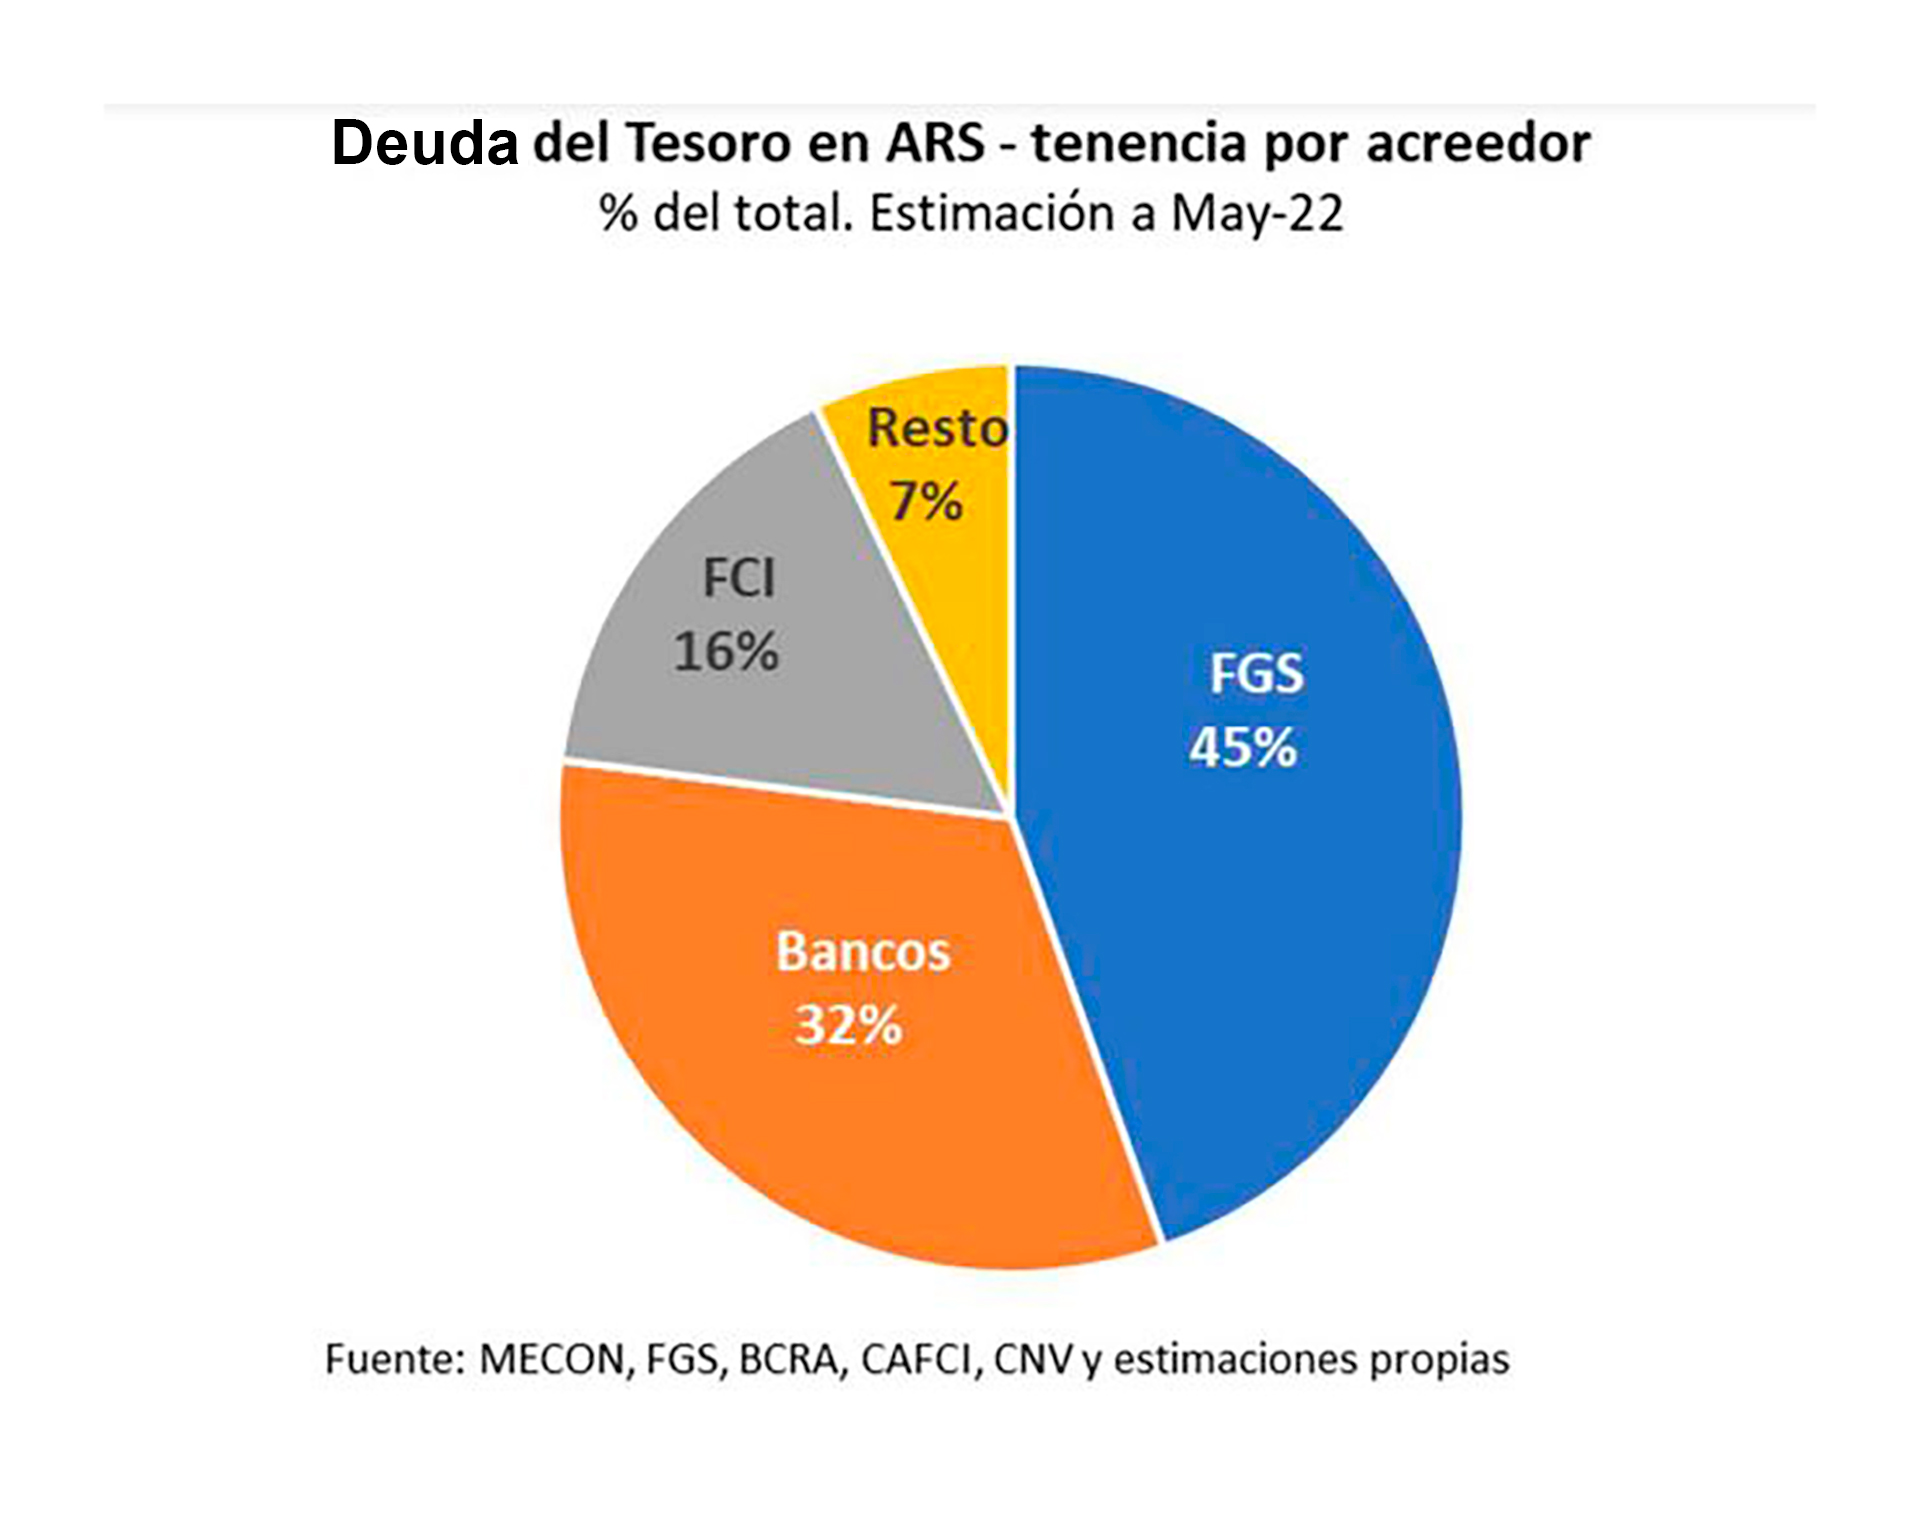 La deuda en pesos del Tesoro es importante, pero 45% es con la Anses y otro 32% es con los bancos locales